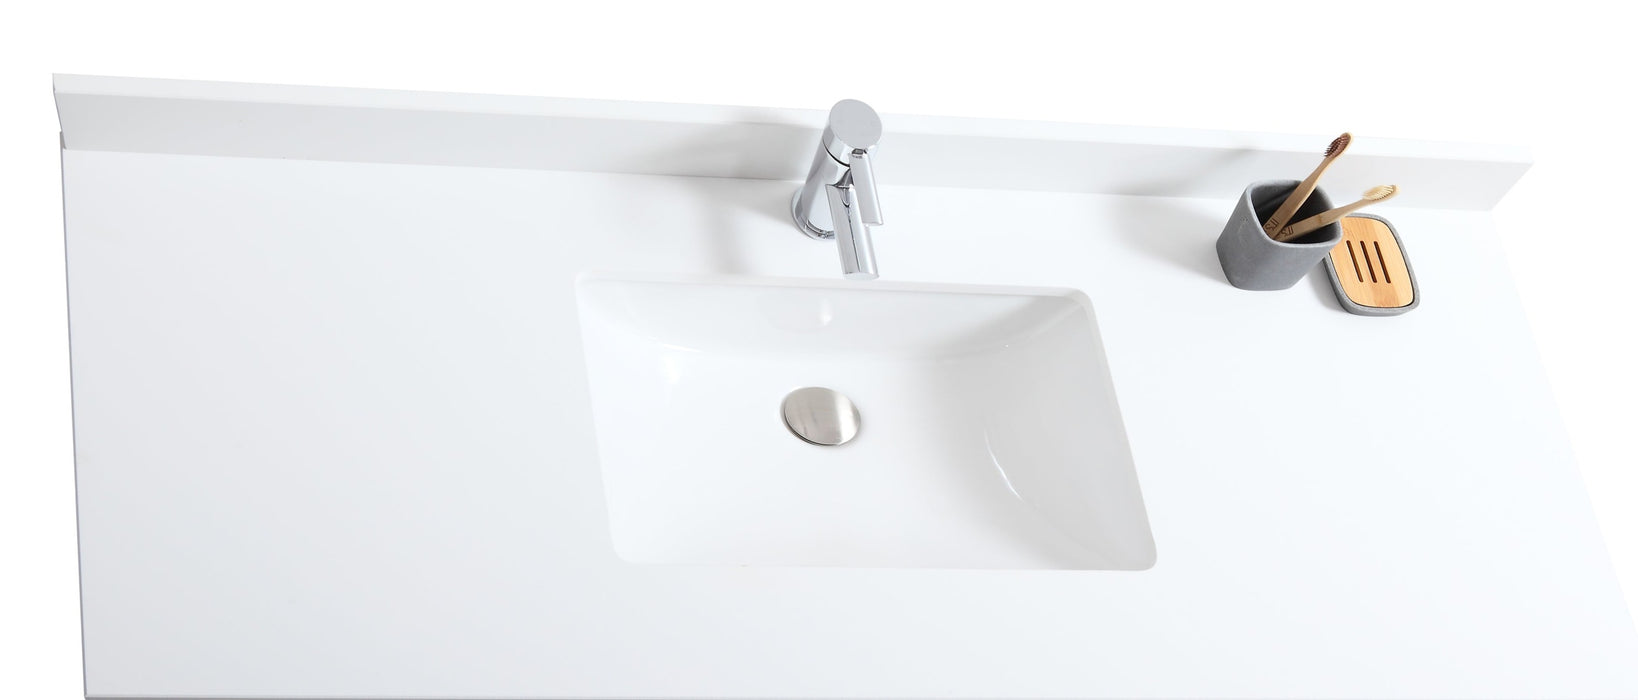 CANADIAN MAPLE 48" Bathroom Vanity With White Quartz Countertop.